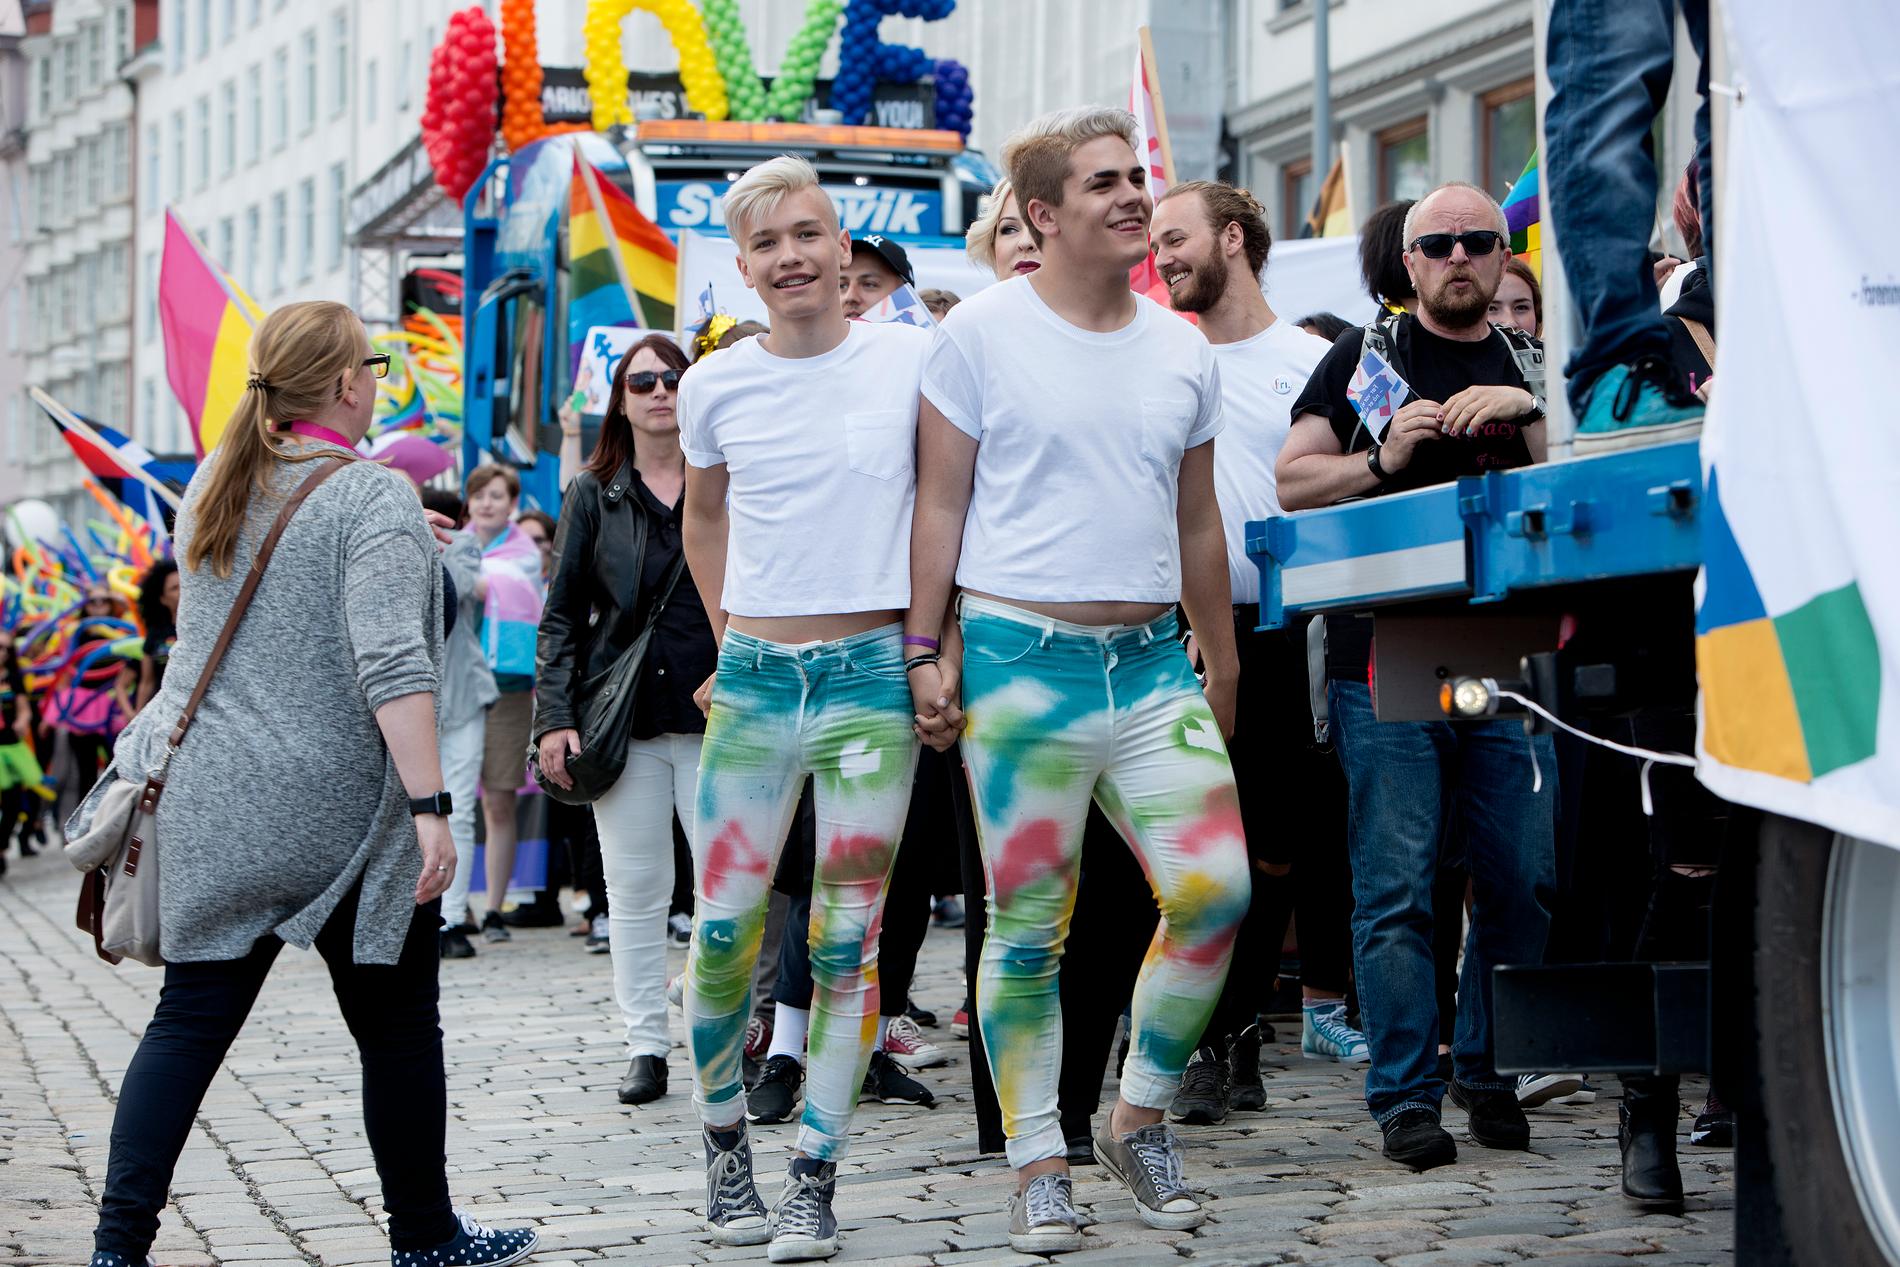 REKORDOPPMØTE: André Klausen og Aron Jasperr var strålende fornøyd med å delta i Regnbueparaden gjennom Bergens gater lørdag. Paraden var den største avsitt slag som er blitt arrangert i Bergen.